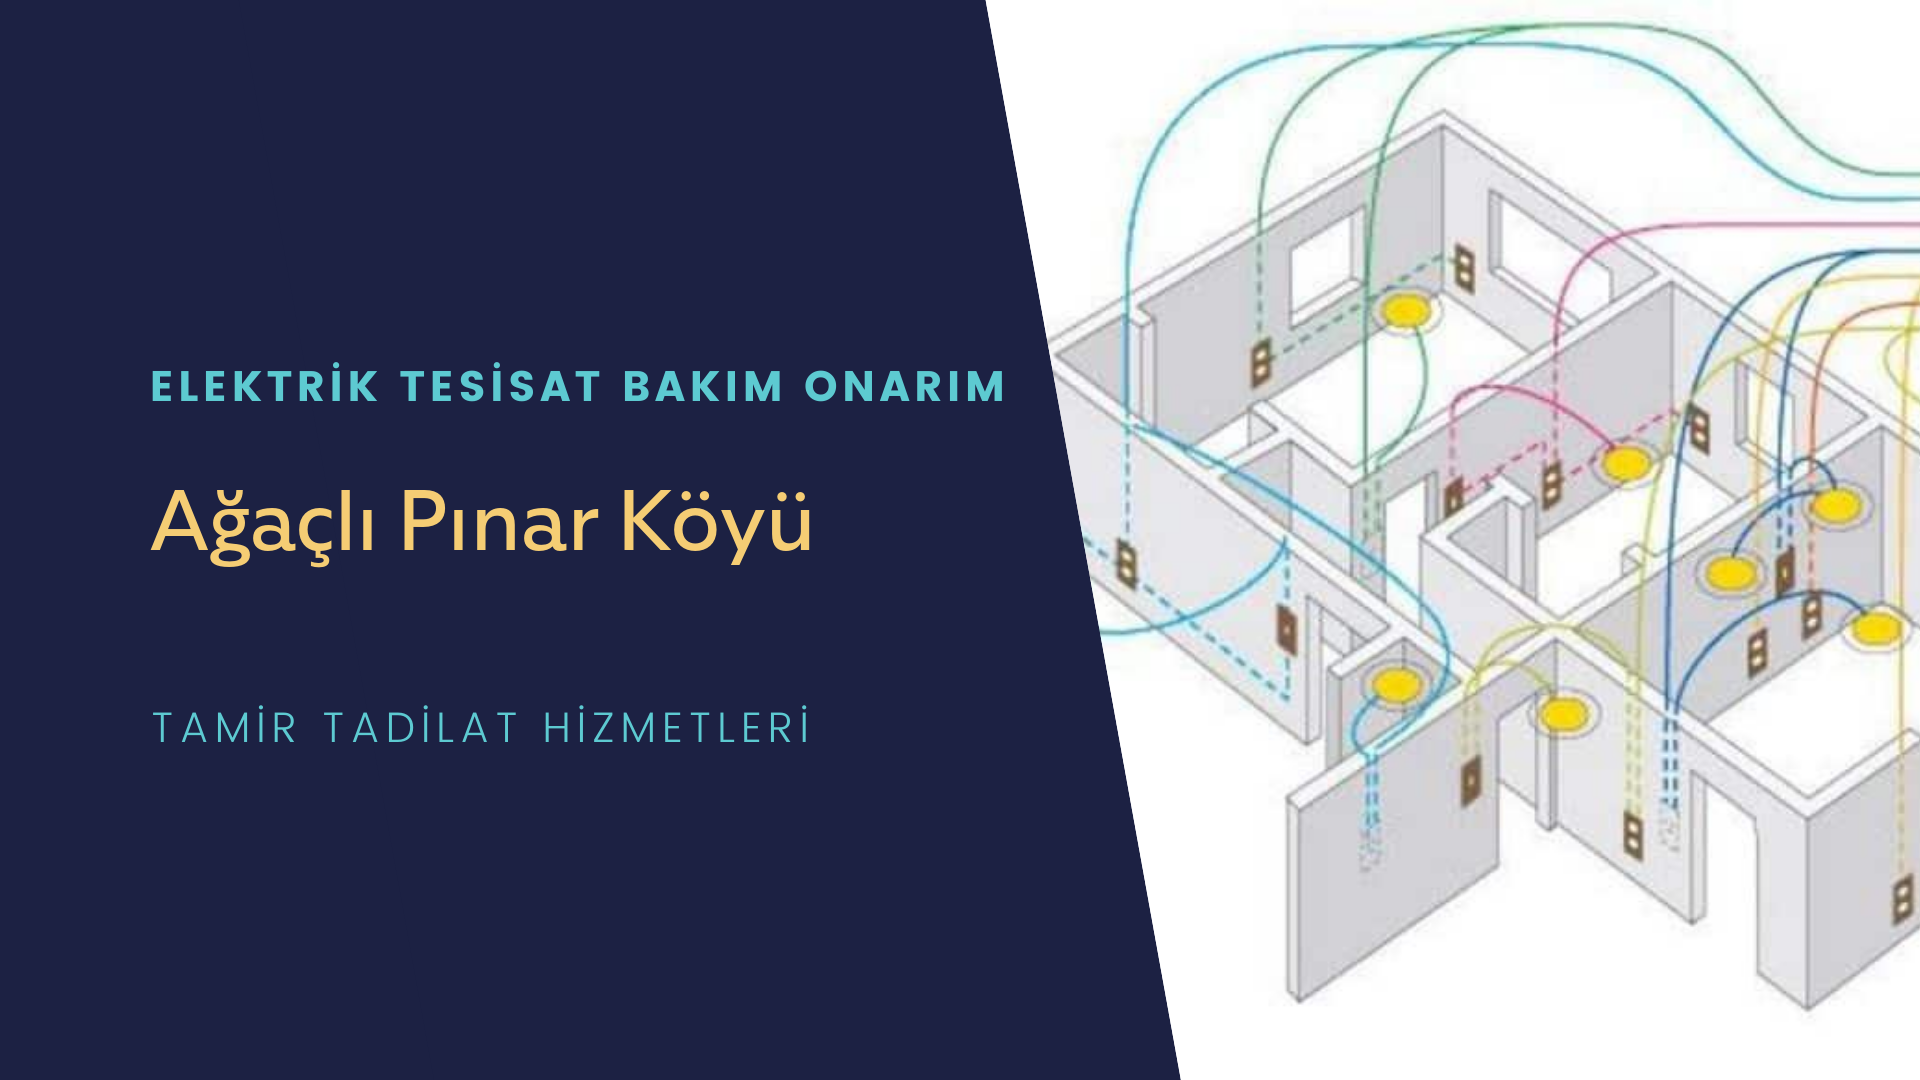 Ağaçlı Pınar Köyü  elektrik tesisatı ustalarımı arıyorsunuz doğru adrestenizi Ağaçlı Pınar Köyü elektrik tesisatı ustalarımız 7/24 sizlere hizmet vermekten mutluluk duyar.